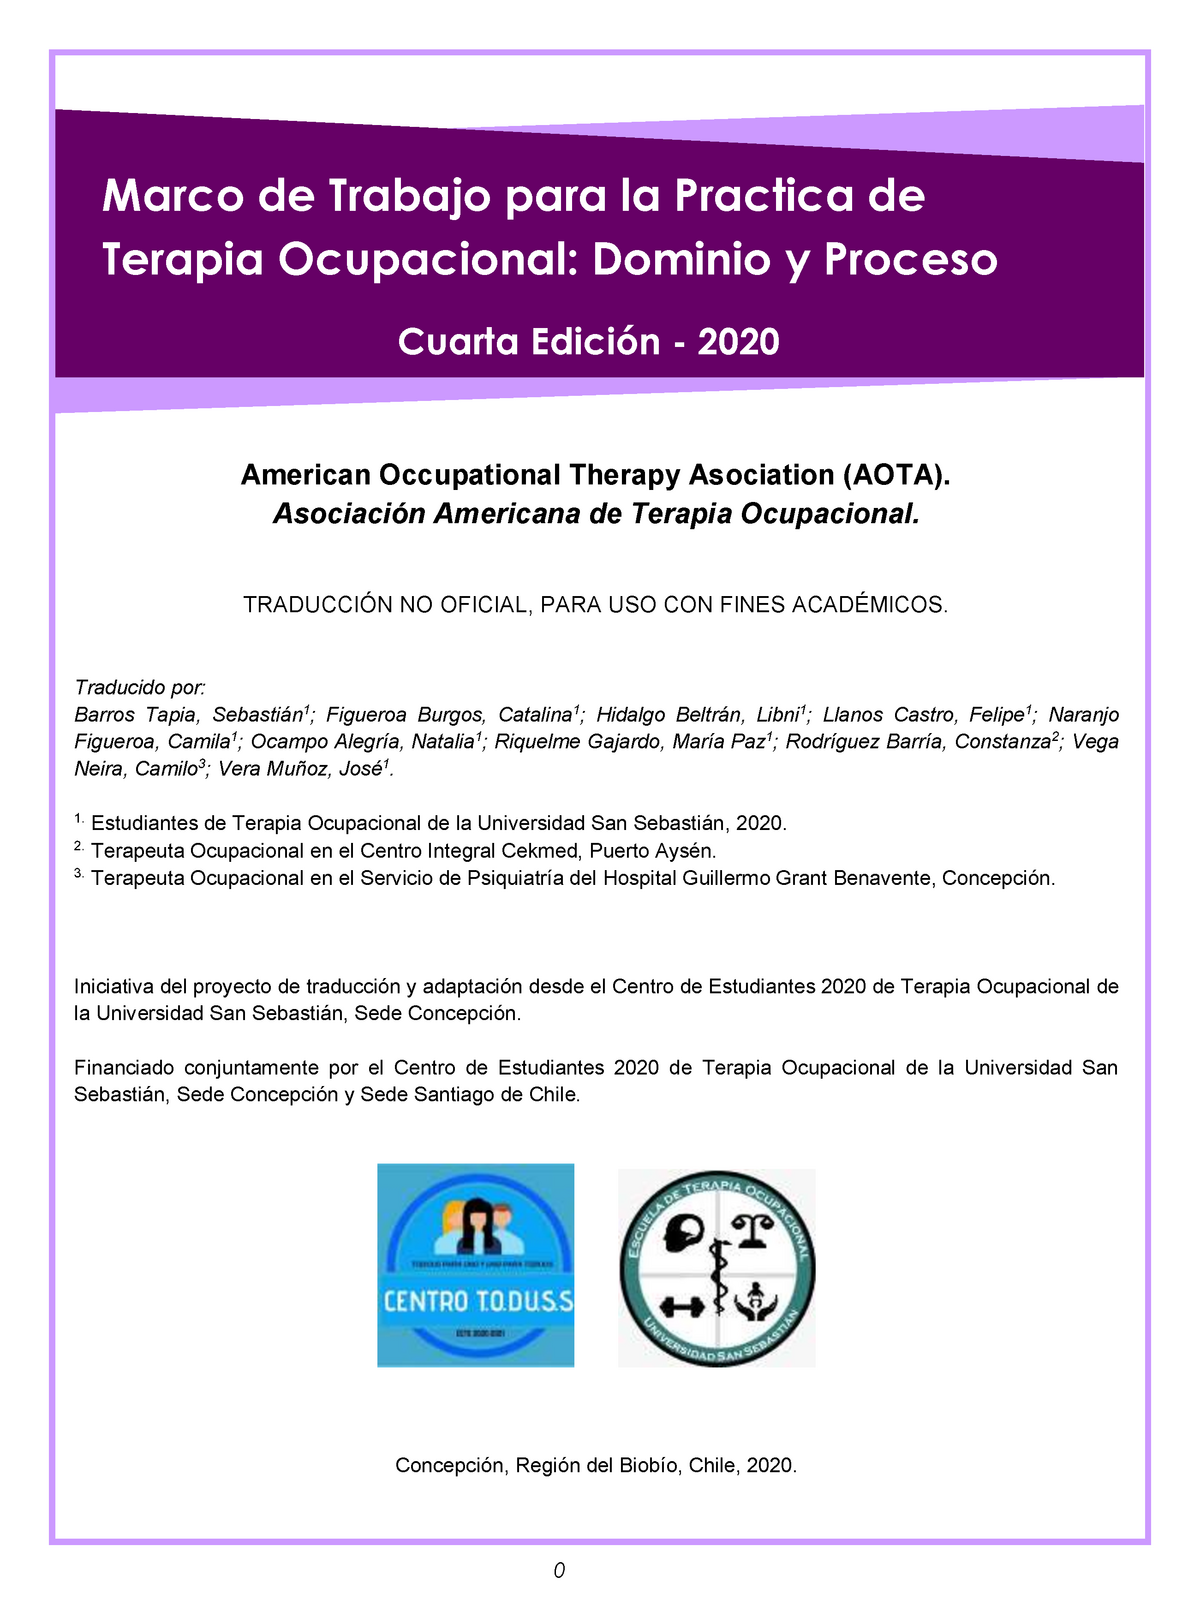 AOTA-2020 CUARTA EDICION - Marco de Trabajo para la Practica de Terapia  Ocupacional: Dominio y - Studocu